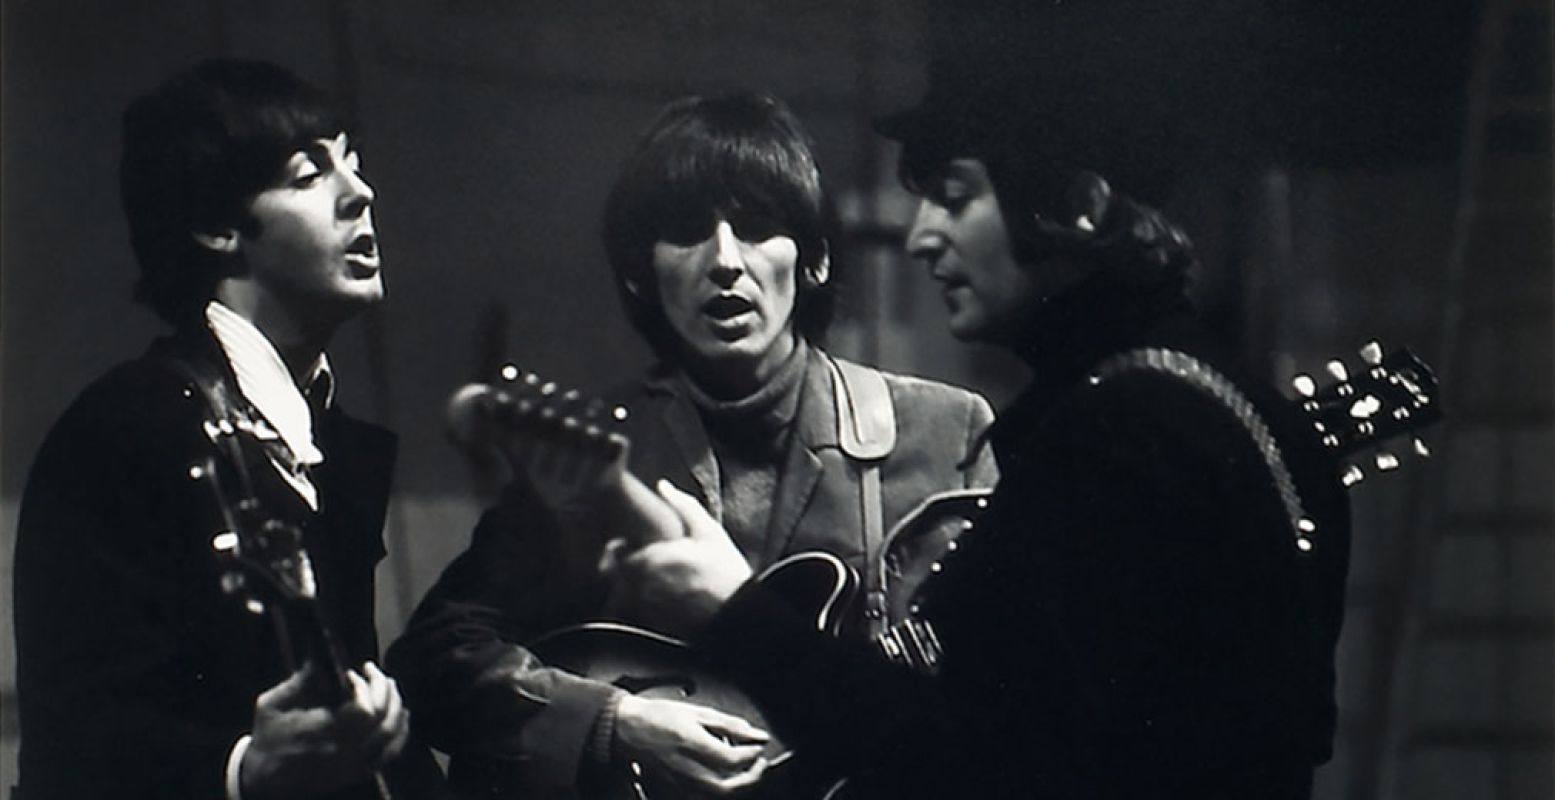 The Beatles aan het repeteren in de Donmar Rehearsal Hall, Londen, 1964. Van links naar rechts Paul McCartney, George Harrison en John Lennon. Ringo Starr ontbreekt op deze foto. Foto: Robert Whitaker.